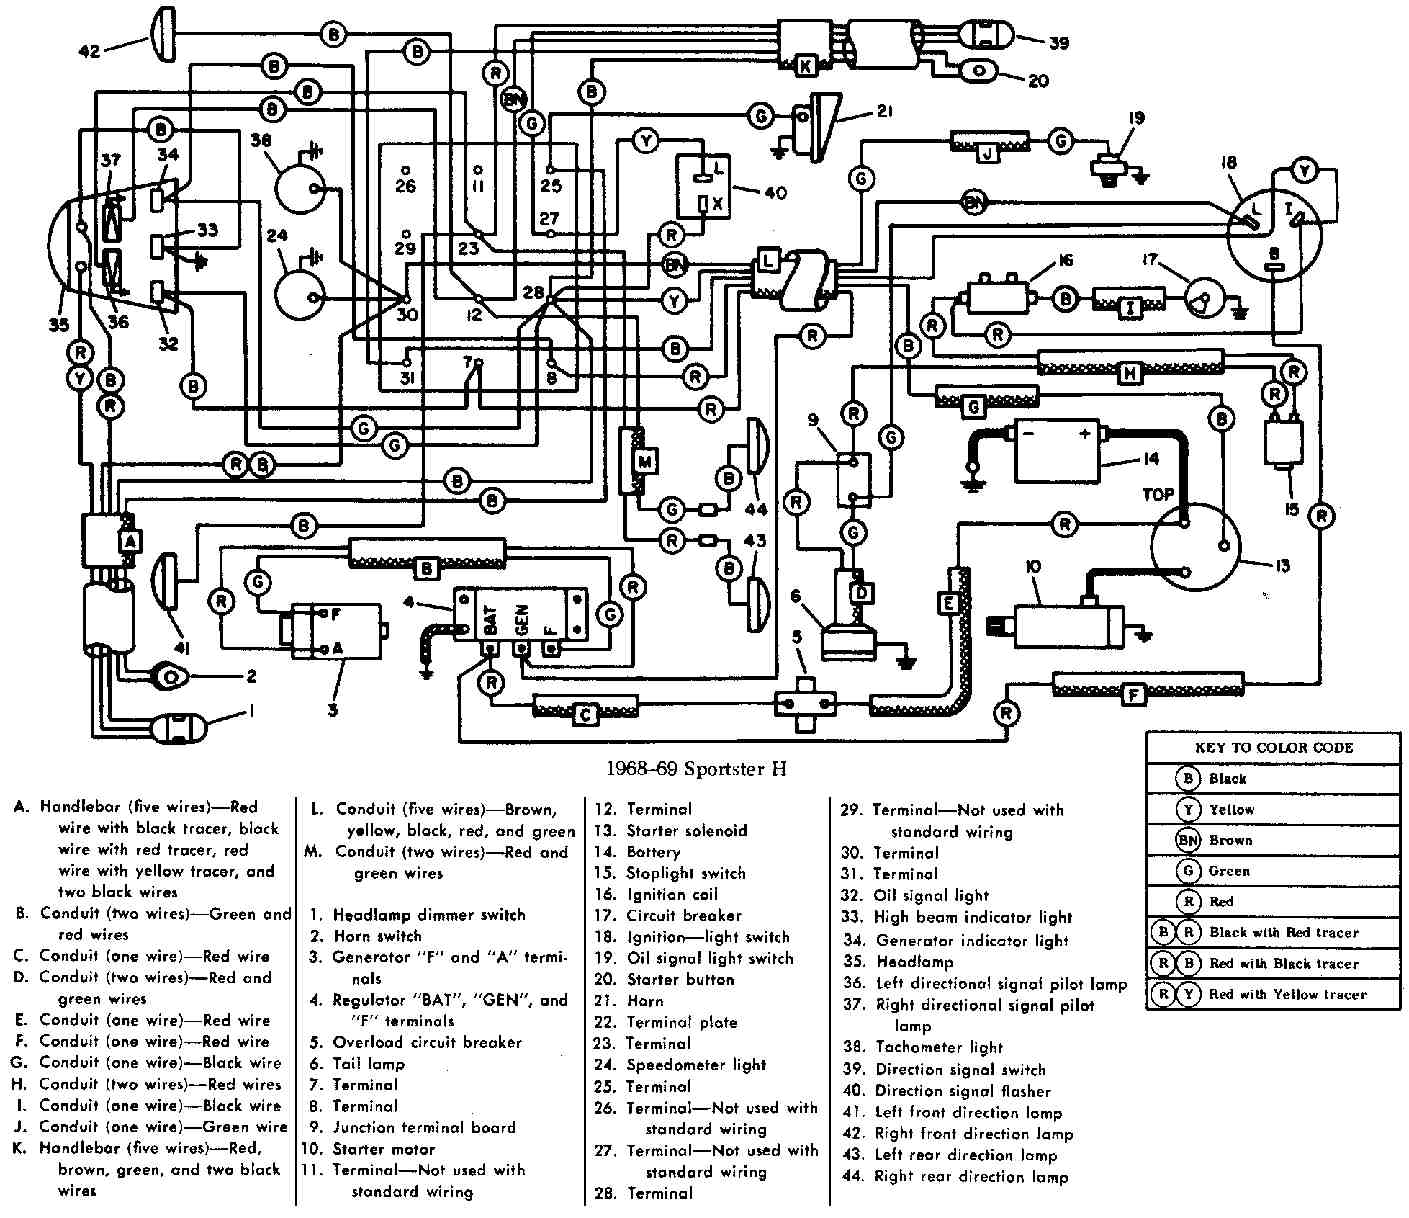 Chrysler electrical wiring diagram